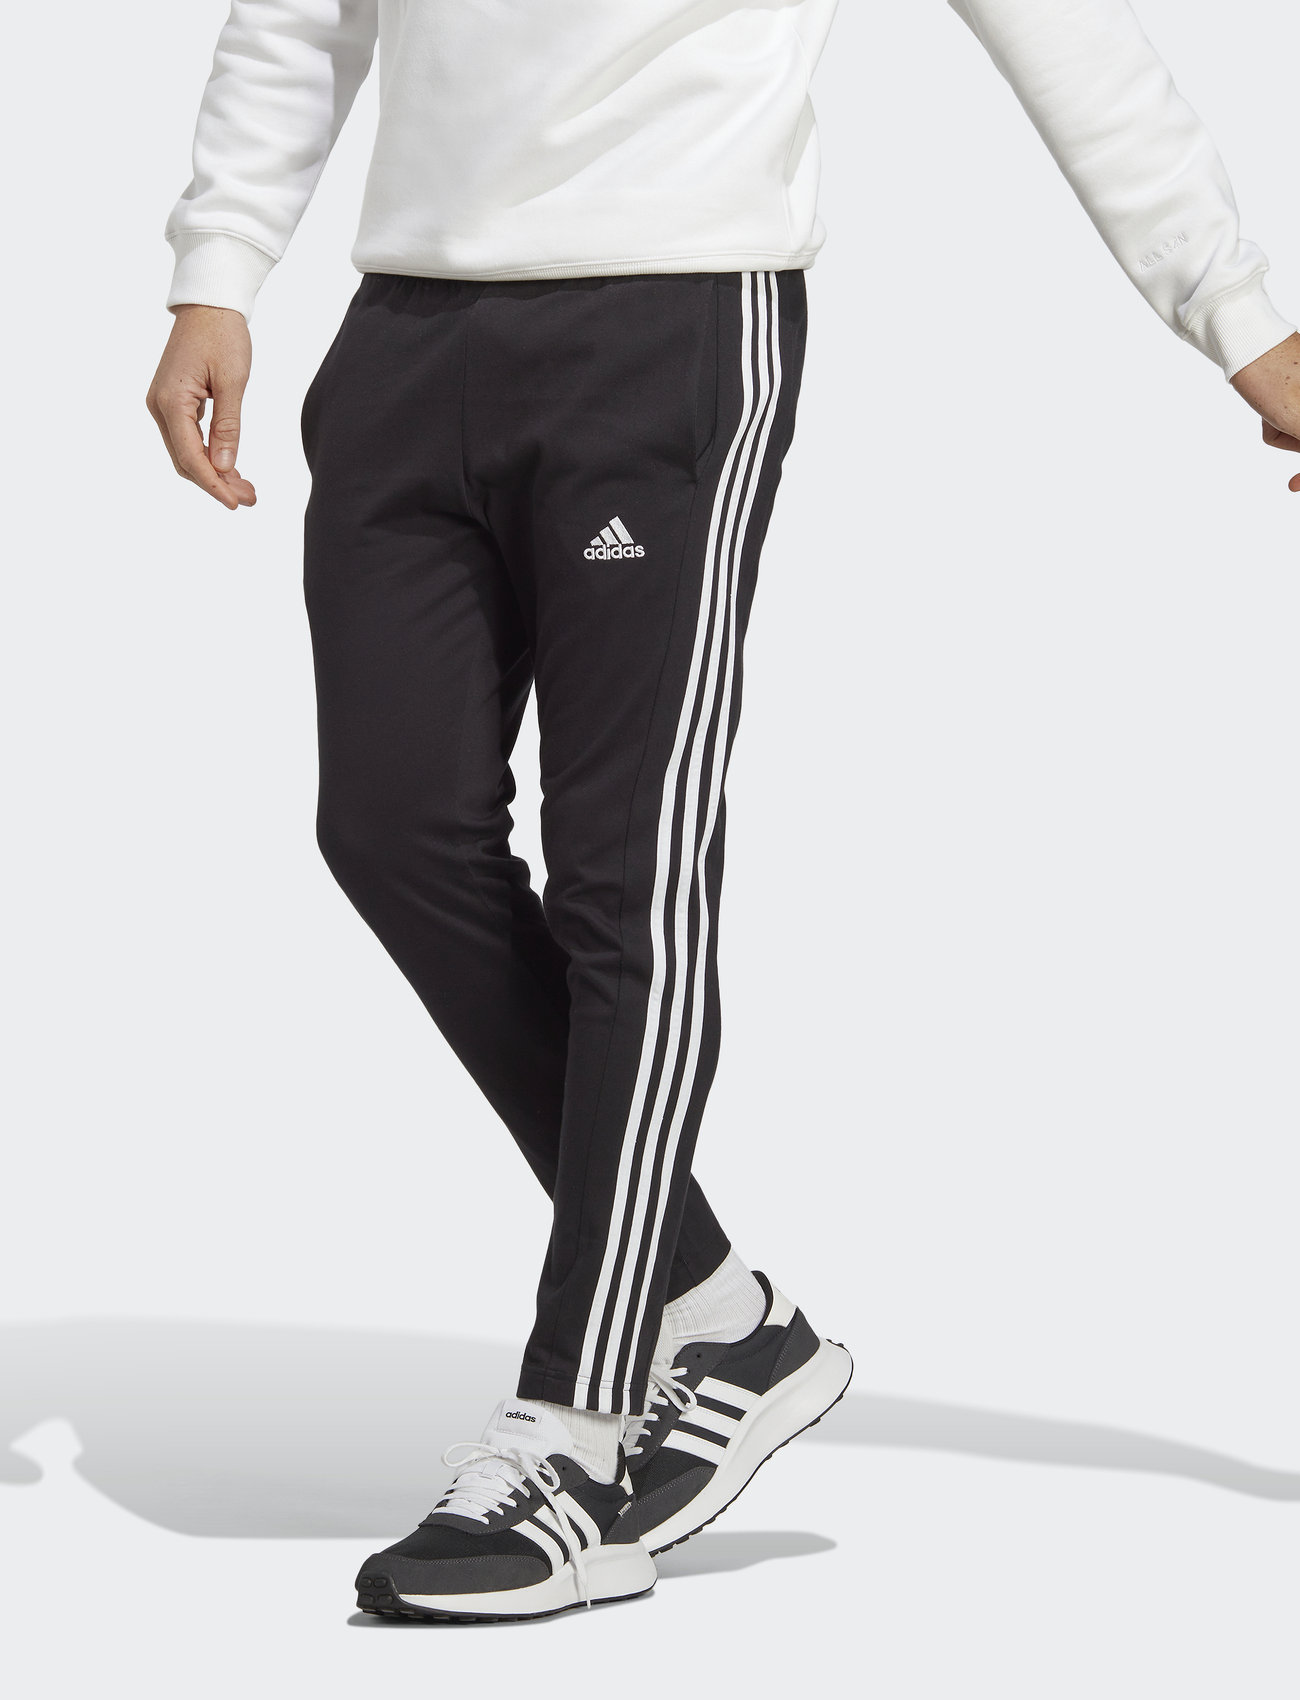 Adidas Women's Essentials Tricot Open Hem Pants - DP2375 - Black / White -  Large